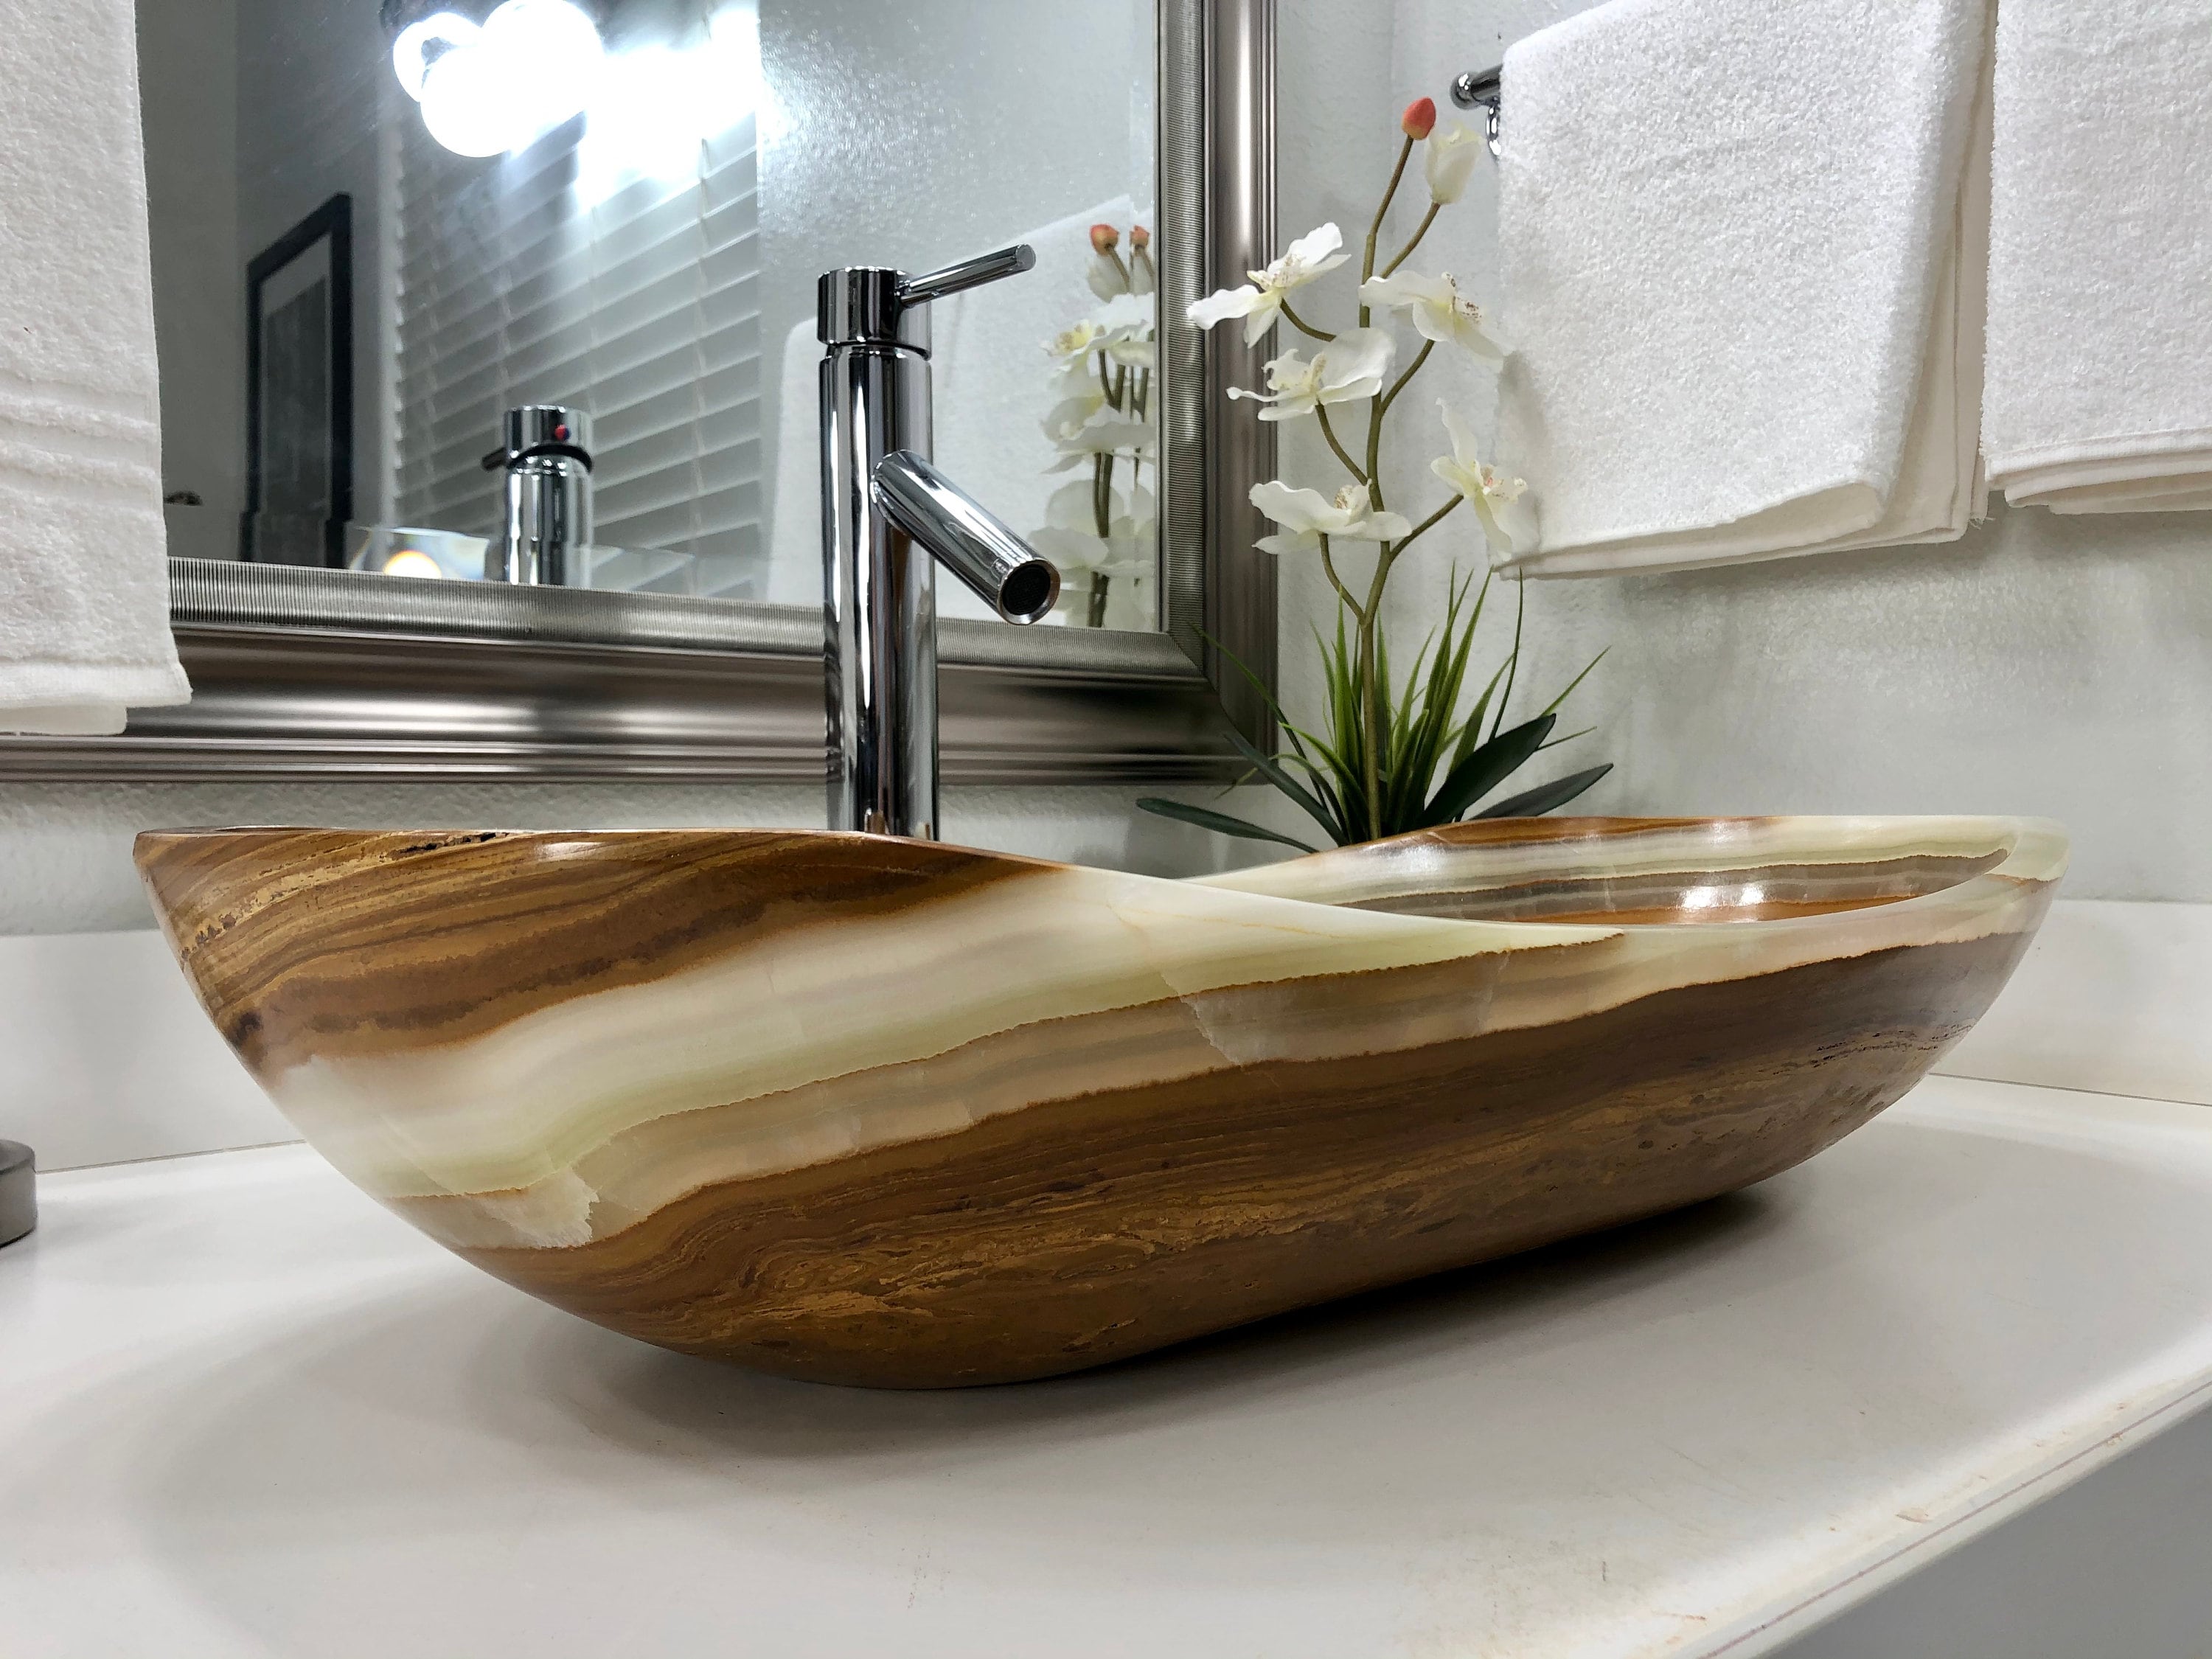 extra vessel sink in kitchen